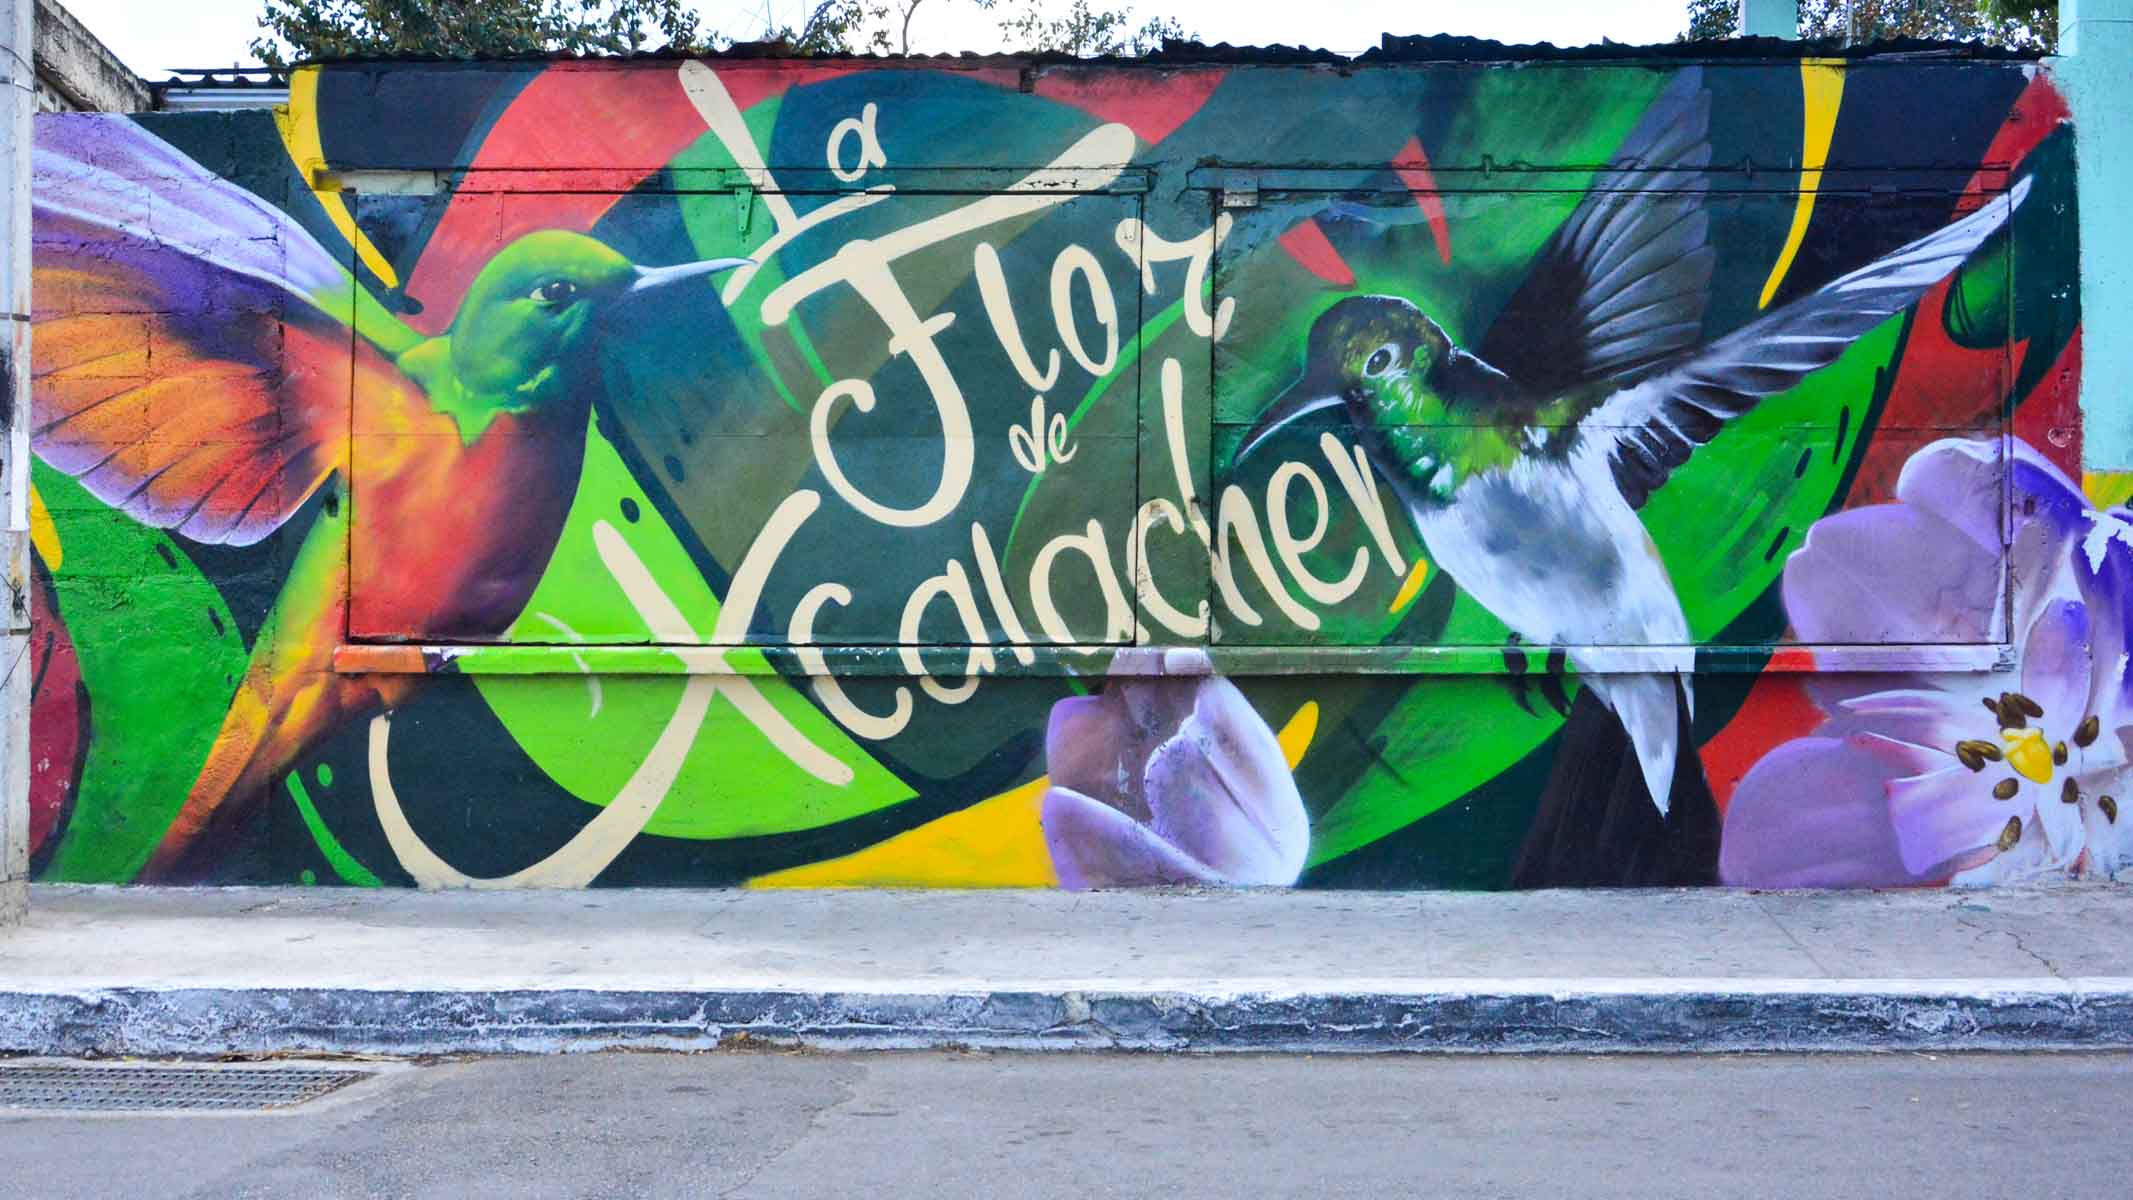 Mural Grafiti "La flor de Xcalachen